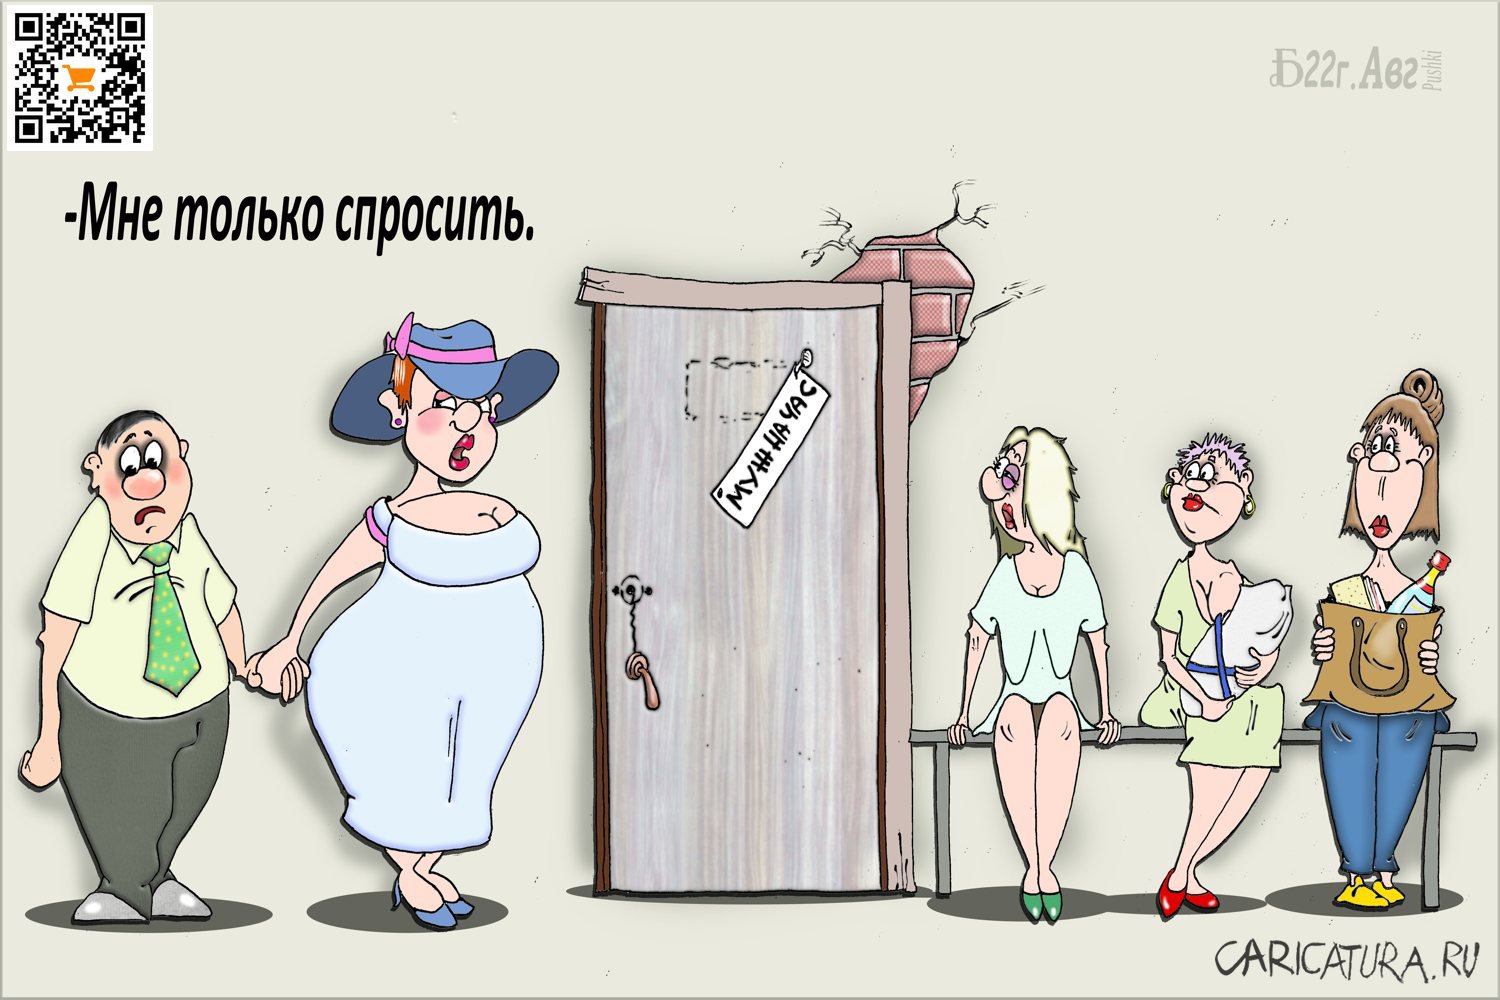 Карикатура "Про мужскую историю", Борис Демин